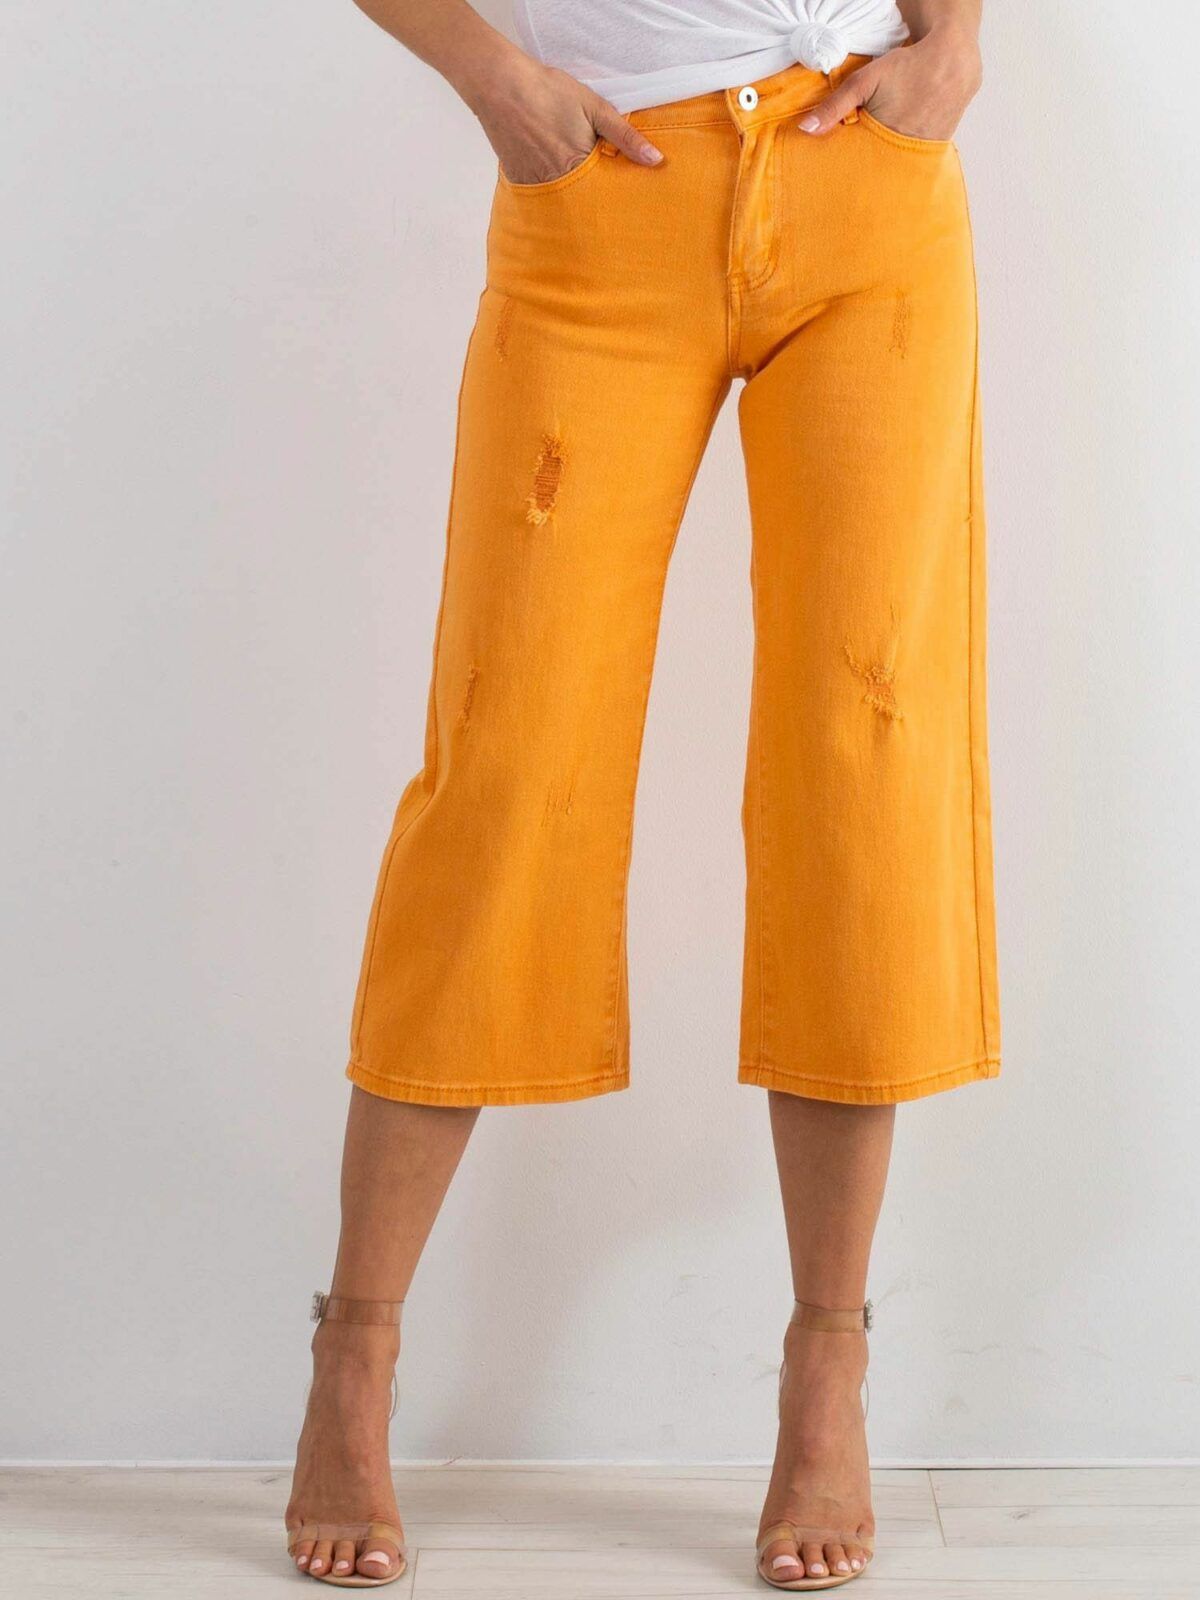 Roztrhané oranžové džíny